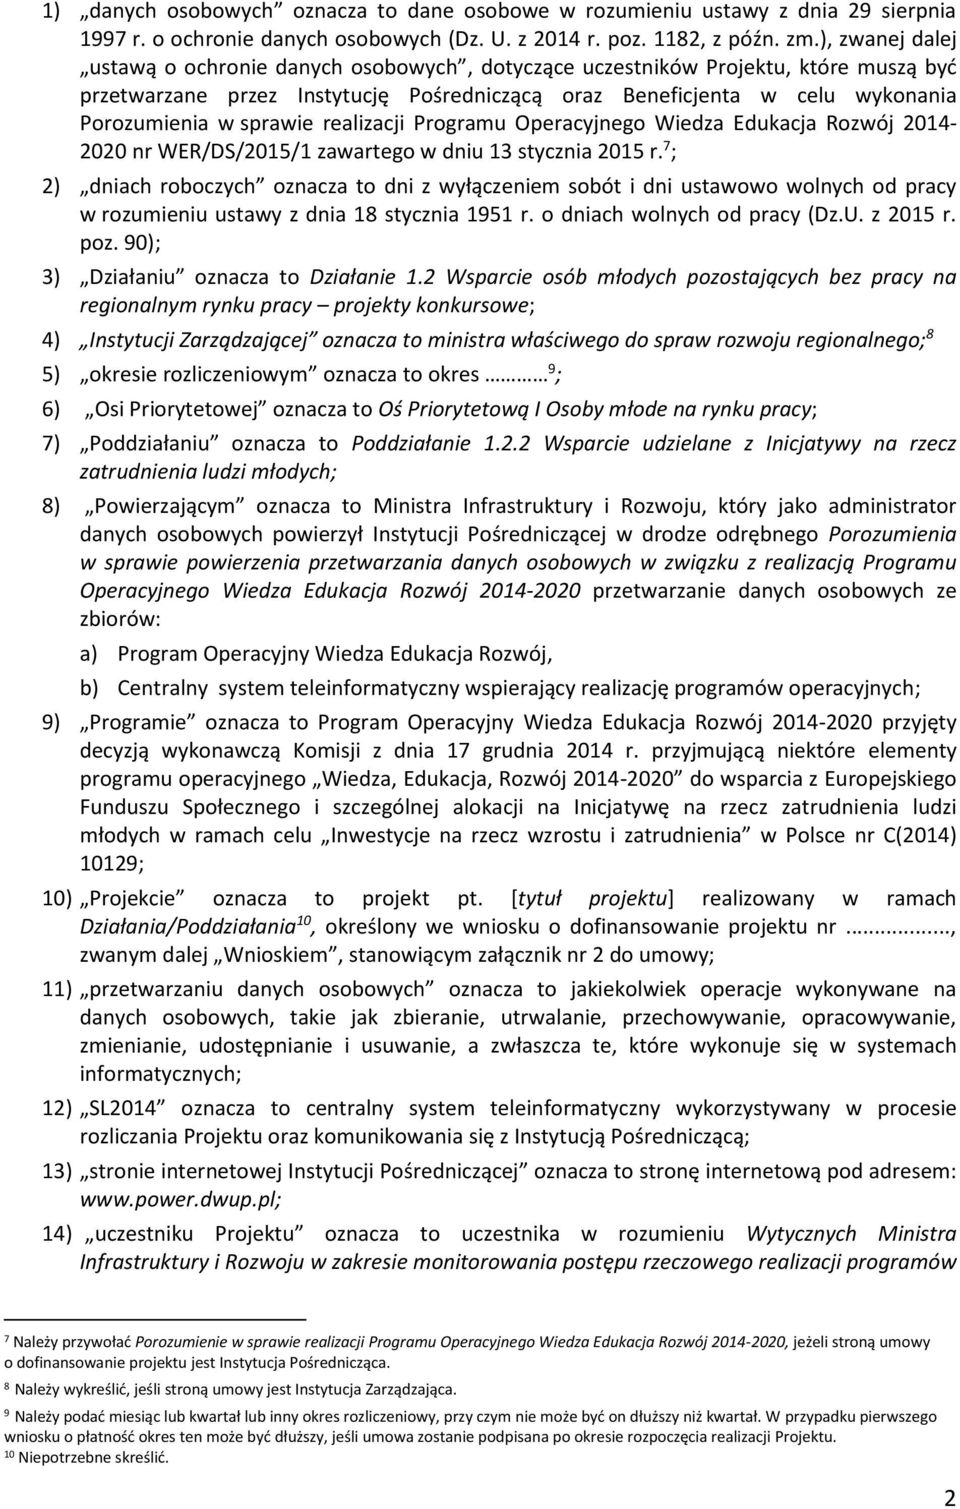 sprawie realizacji Programu Operacyjnego Wiedza Edukacja Rozwój 2014-2020 nr WER/DS/2015/1 zawartego w dniu 13 stycznia 2015 r.